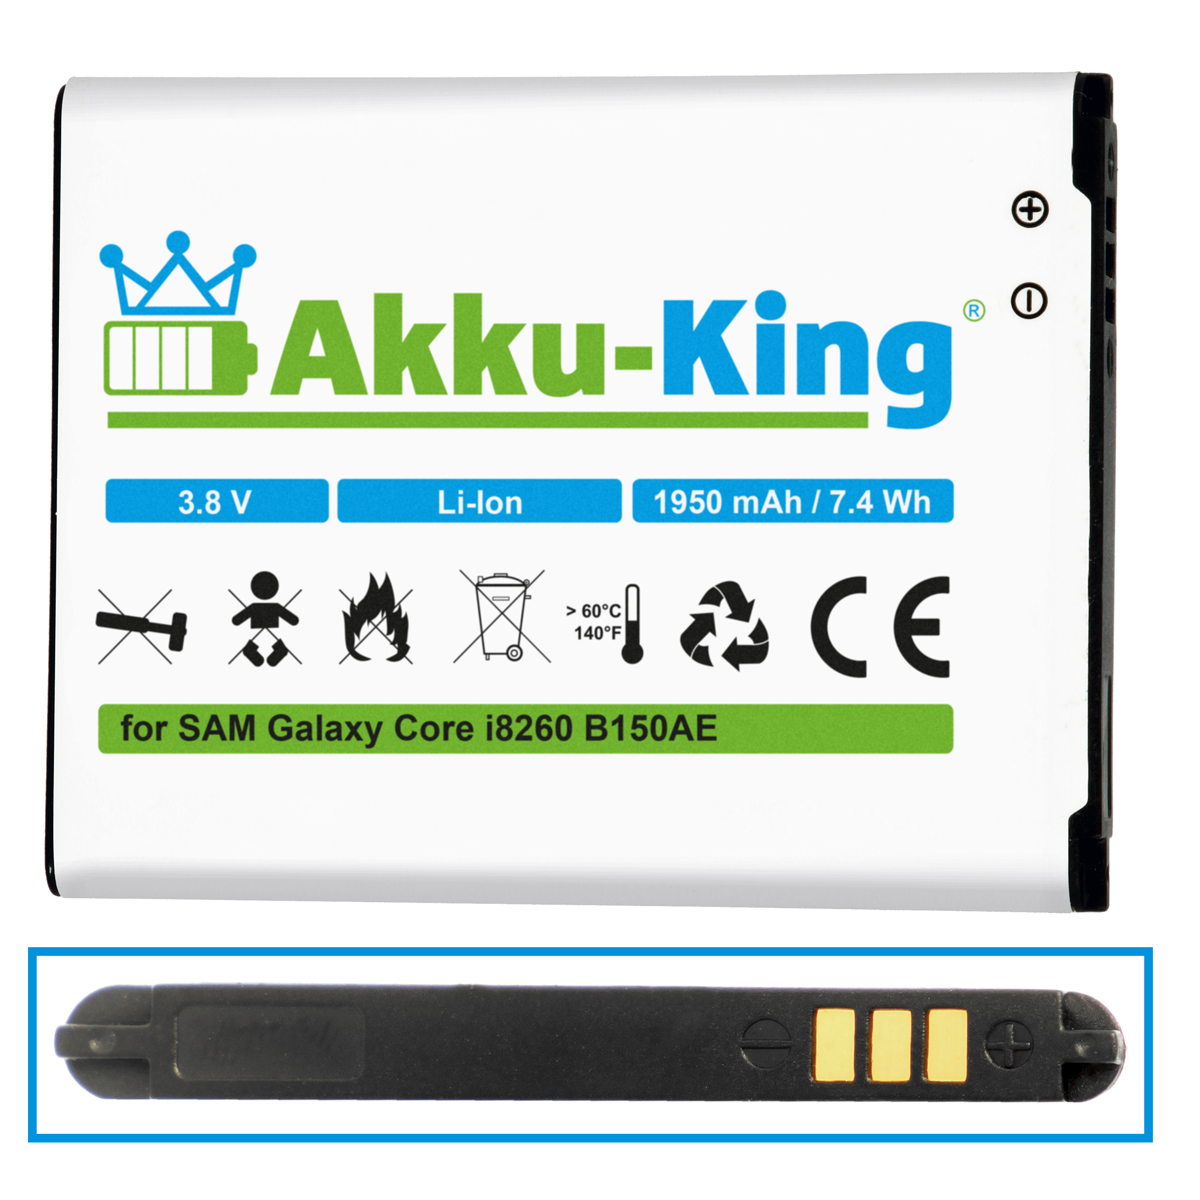 mit Handy-Akku, Li-Ion AKKU-KING Volt, 1950mAh 3.8 Akku B150AE Samsung kompatibel